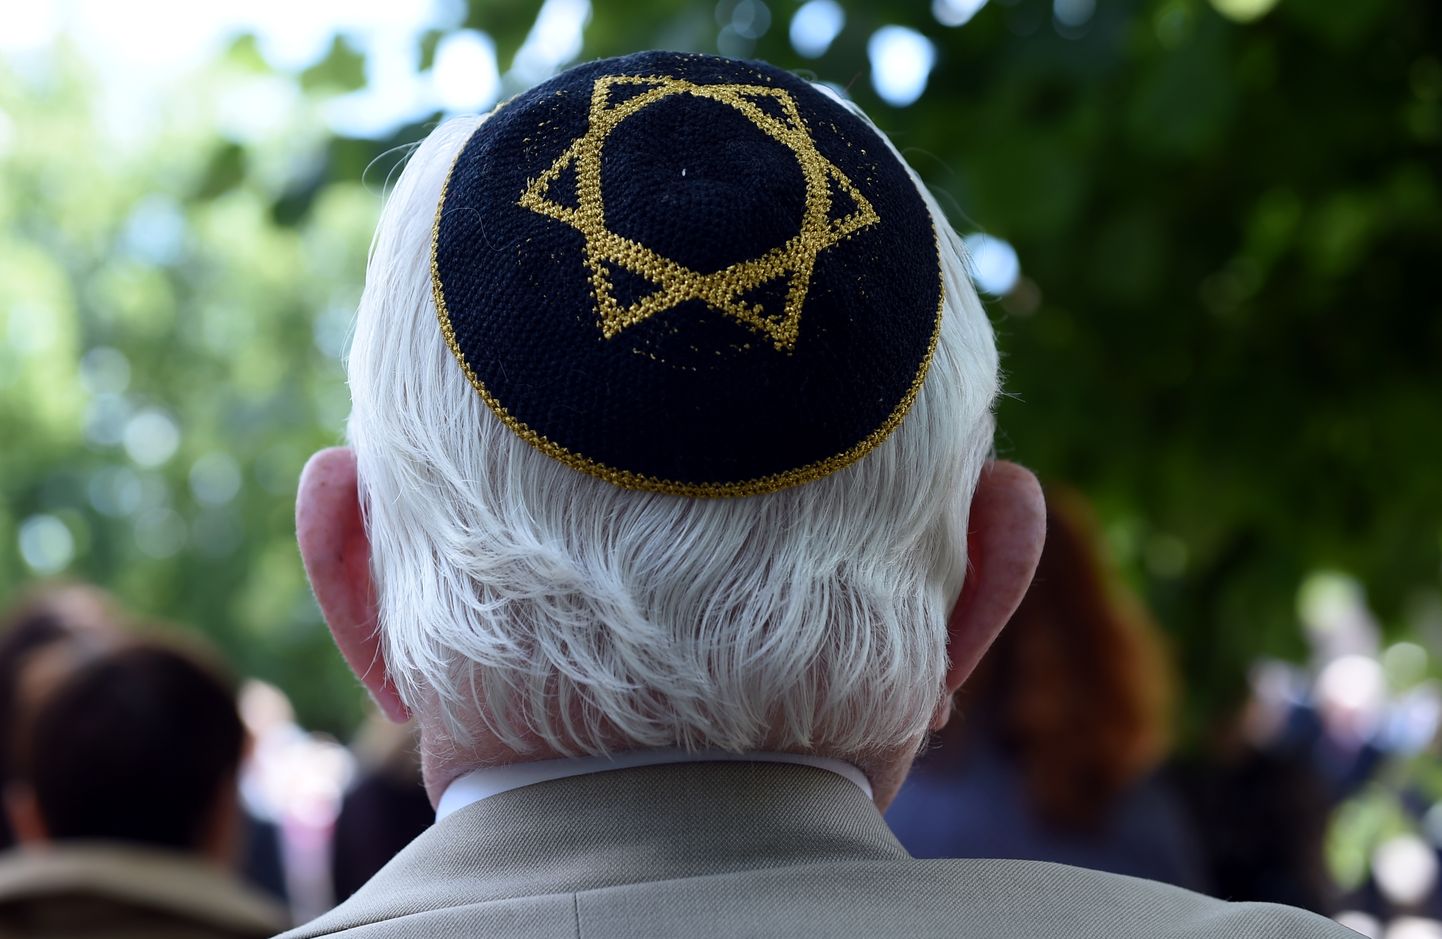 Cilvēki ieradušies uz ebreju tautas genocīda upuru piemiņai veltīto pasākumu pie Holokausta upuru memoriāla Gogoļa ielā.